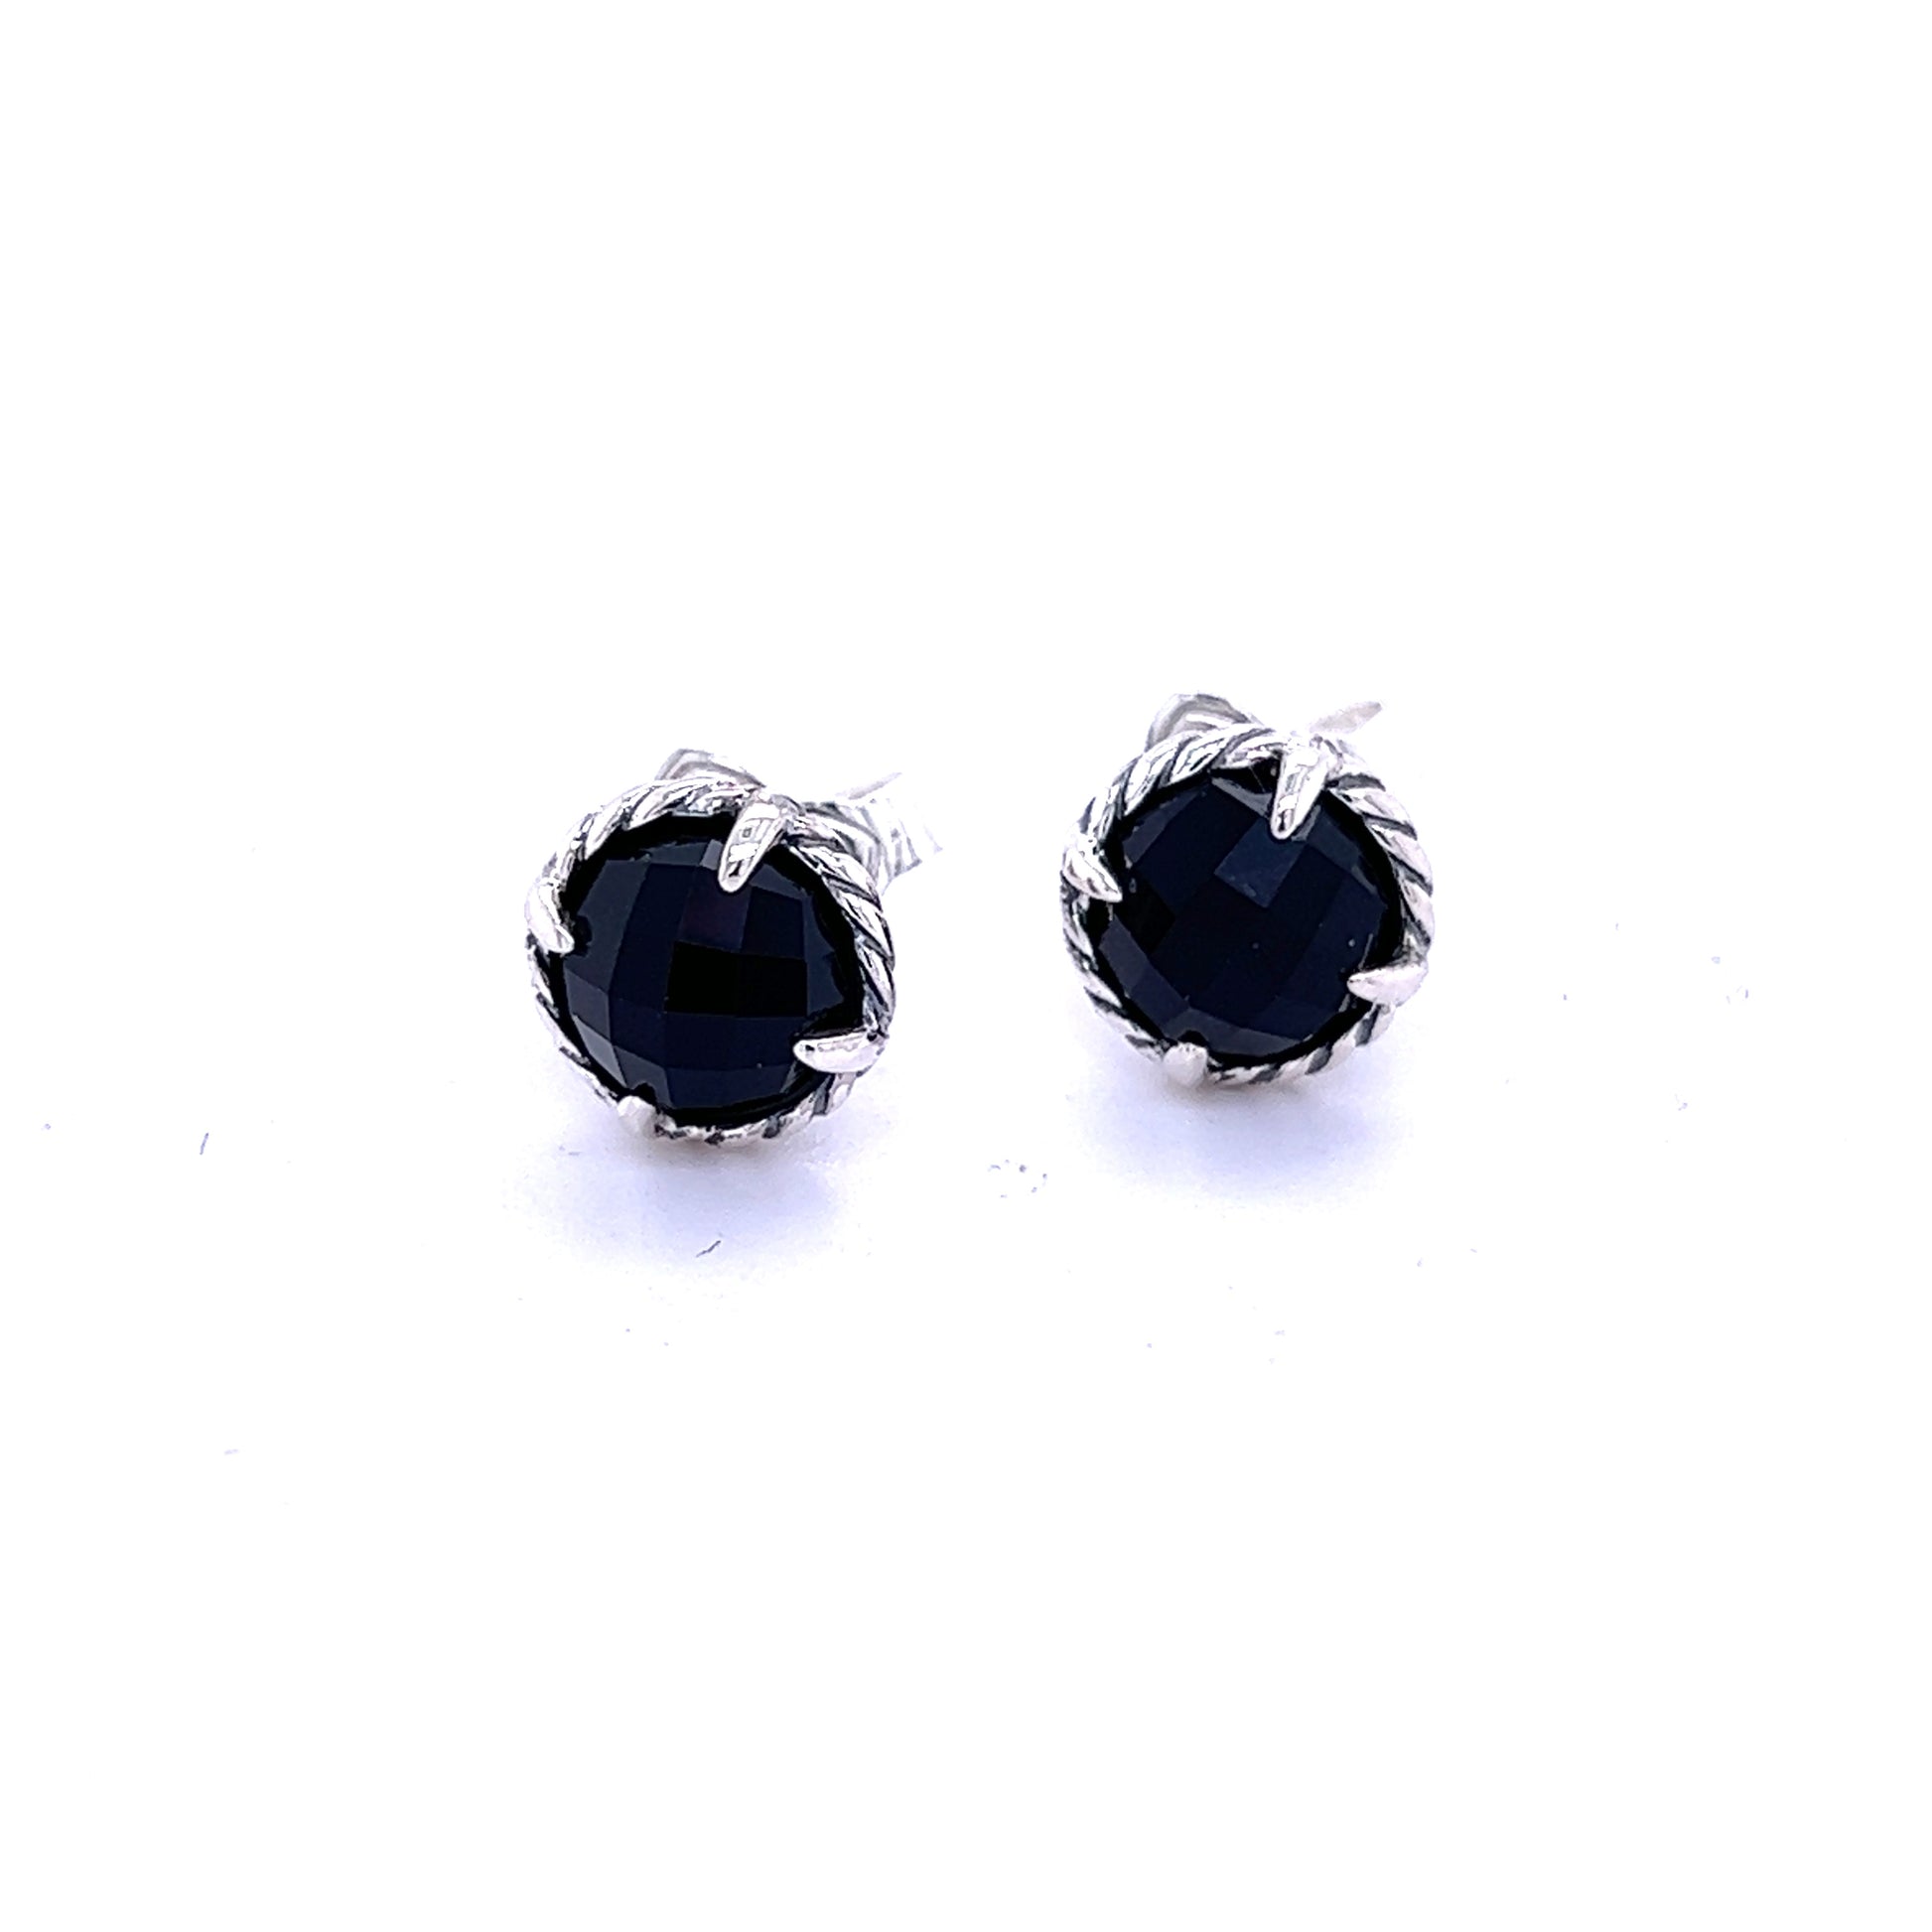 David Yurman Authentic Estate Black Orquid Chantelaine Earrings Silver DY237 - Certified Fine Jewelry